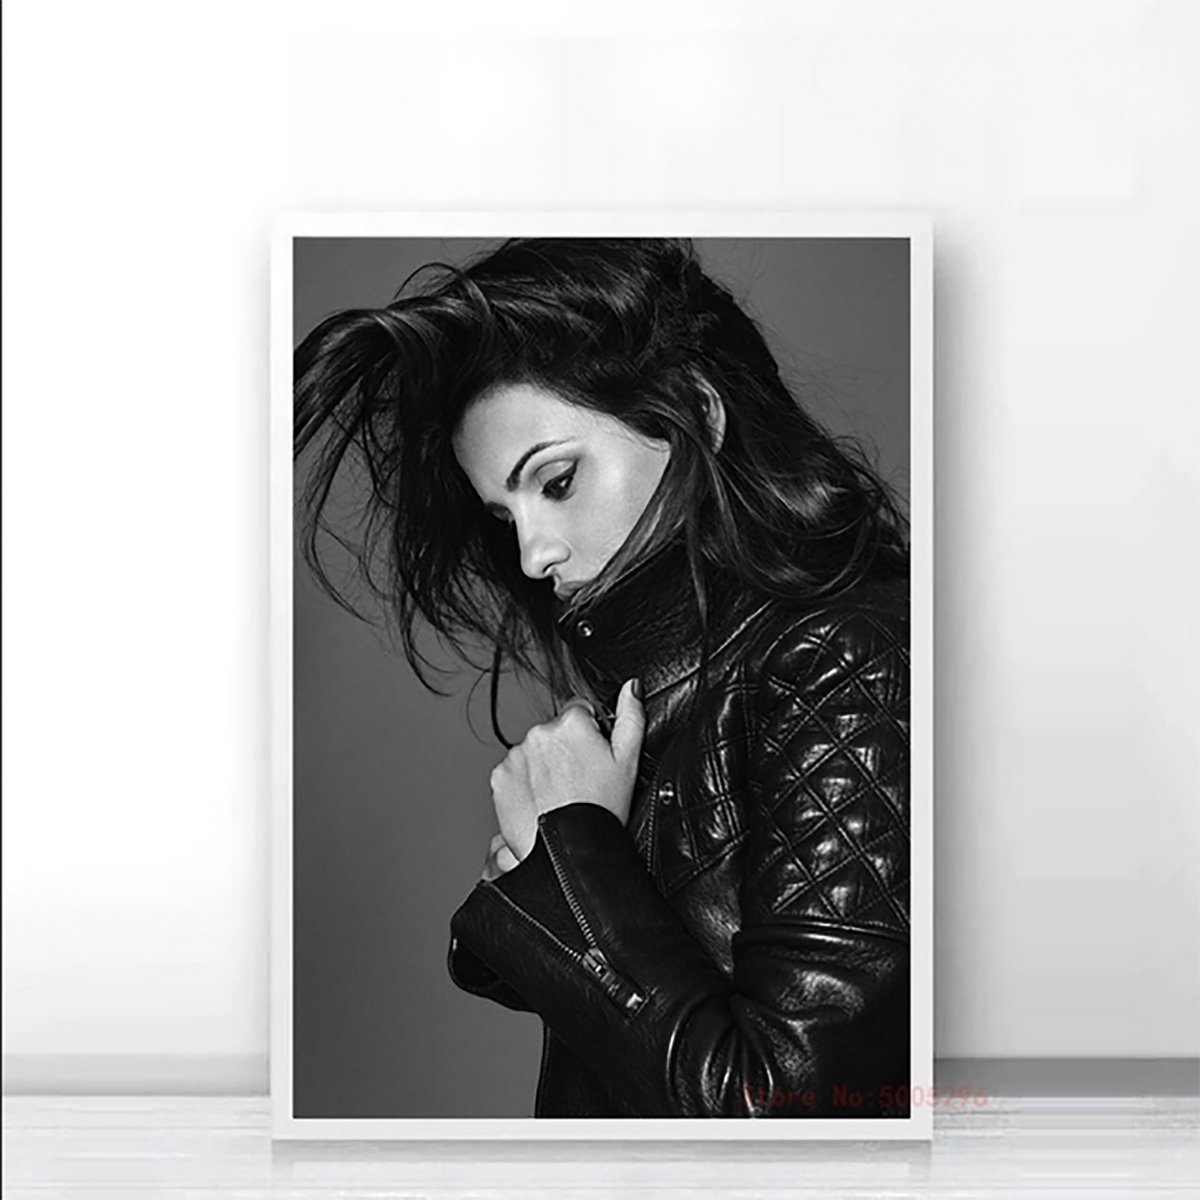 TPFLiving Kunstdruck (OHNE RAHMEN) Poster - Leinwand - Wandbild, Penelope Cruz - Kunstdrucke der spanischen Schauspielerin - (Leinwand Wohnzimmer, Leinwand Bilder, Kunstdruck), Farben: Schwarz, Weiß - Größe 13x18cm